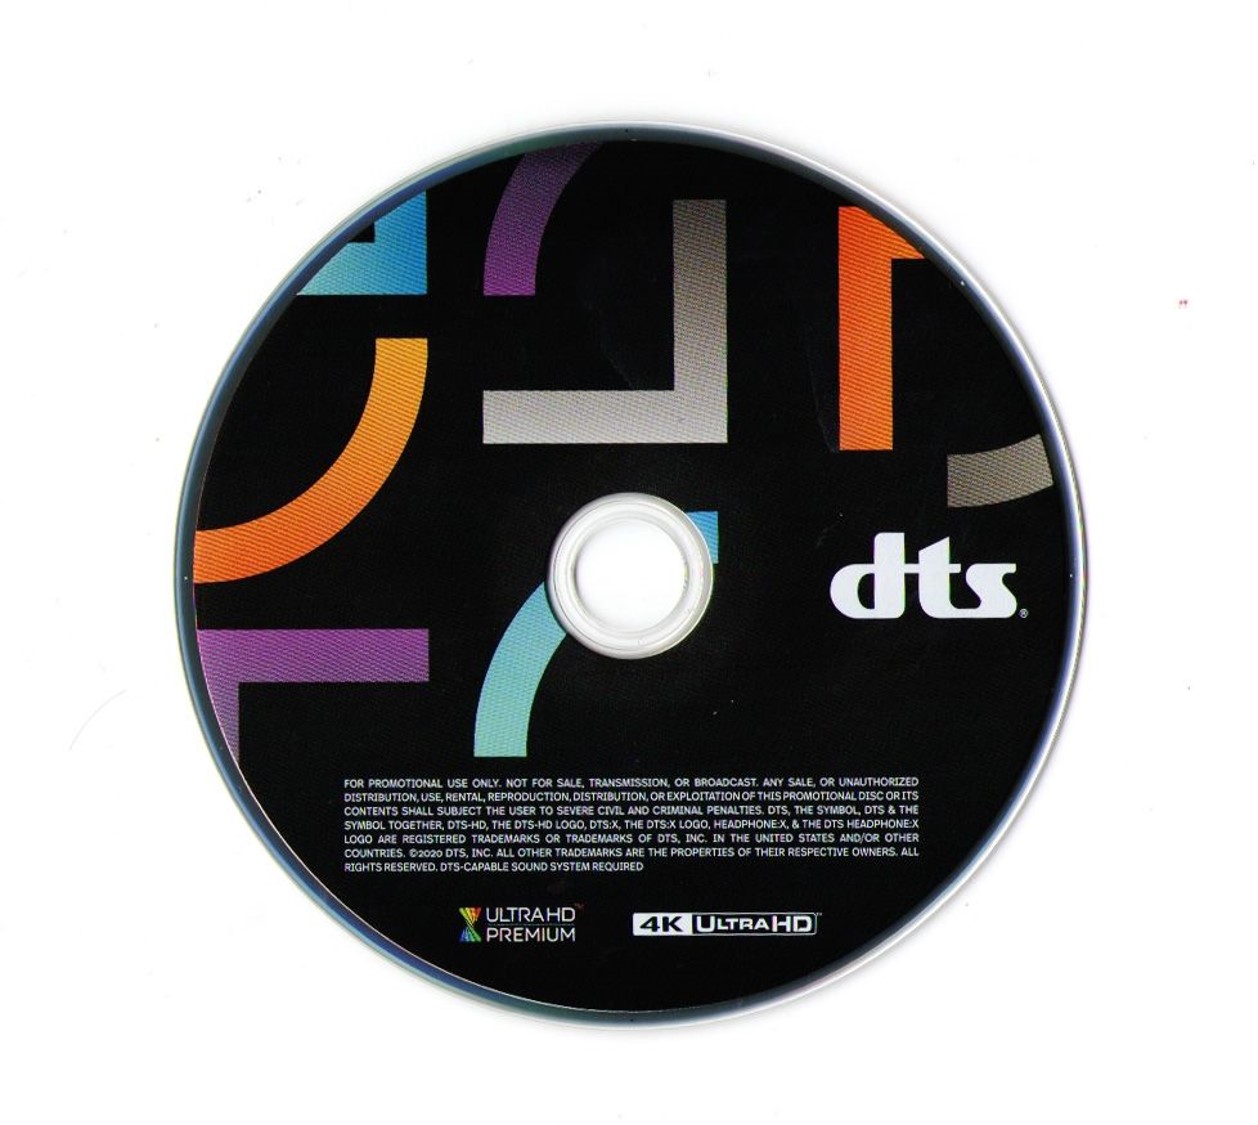 DTS蓝光演示碟 2020 4K UHD DTS Demo Disc Vol.24 H.265 HDR 4KUltraHD DTS-X 7.1-